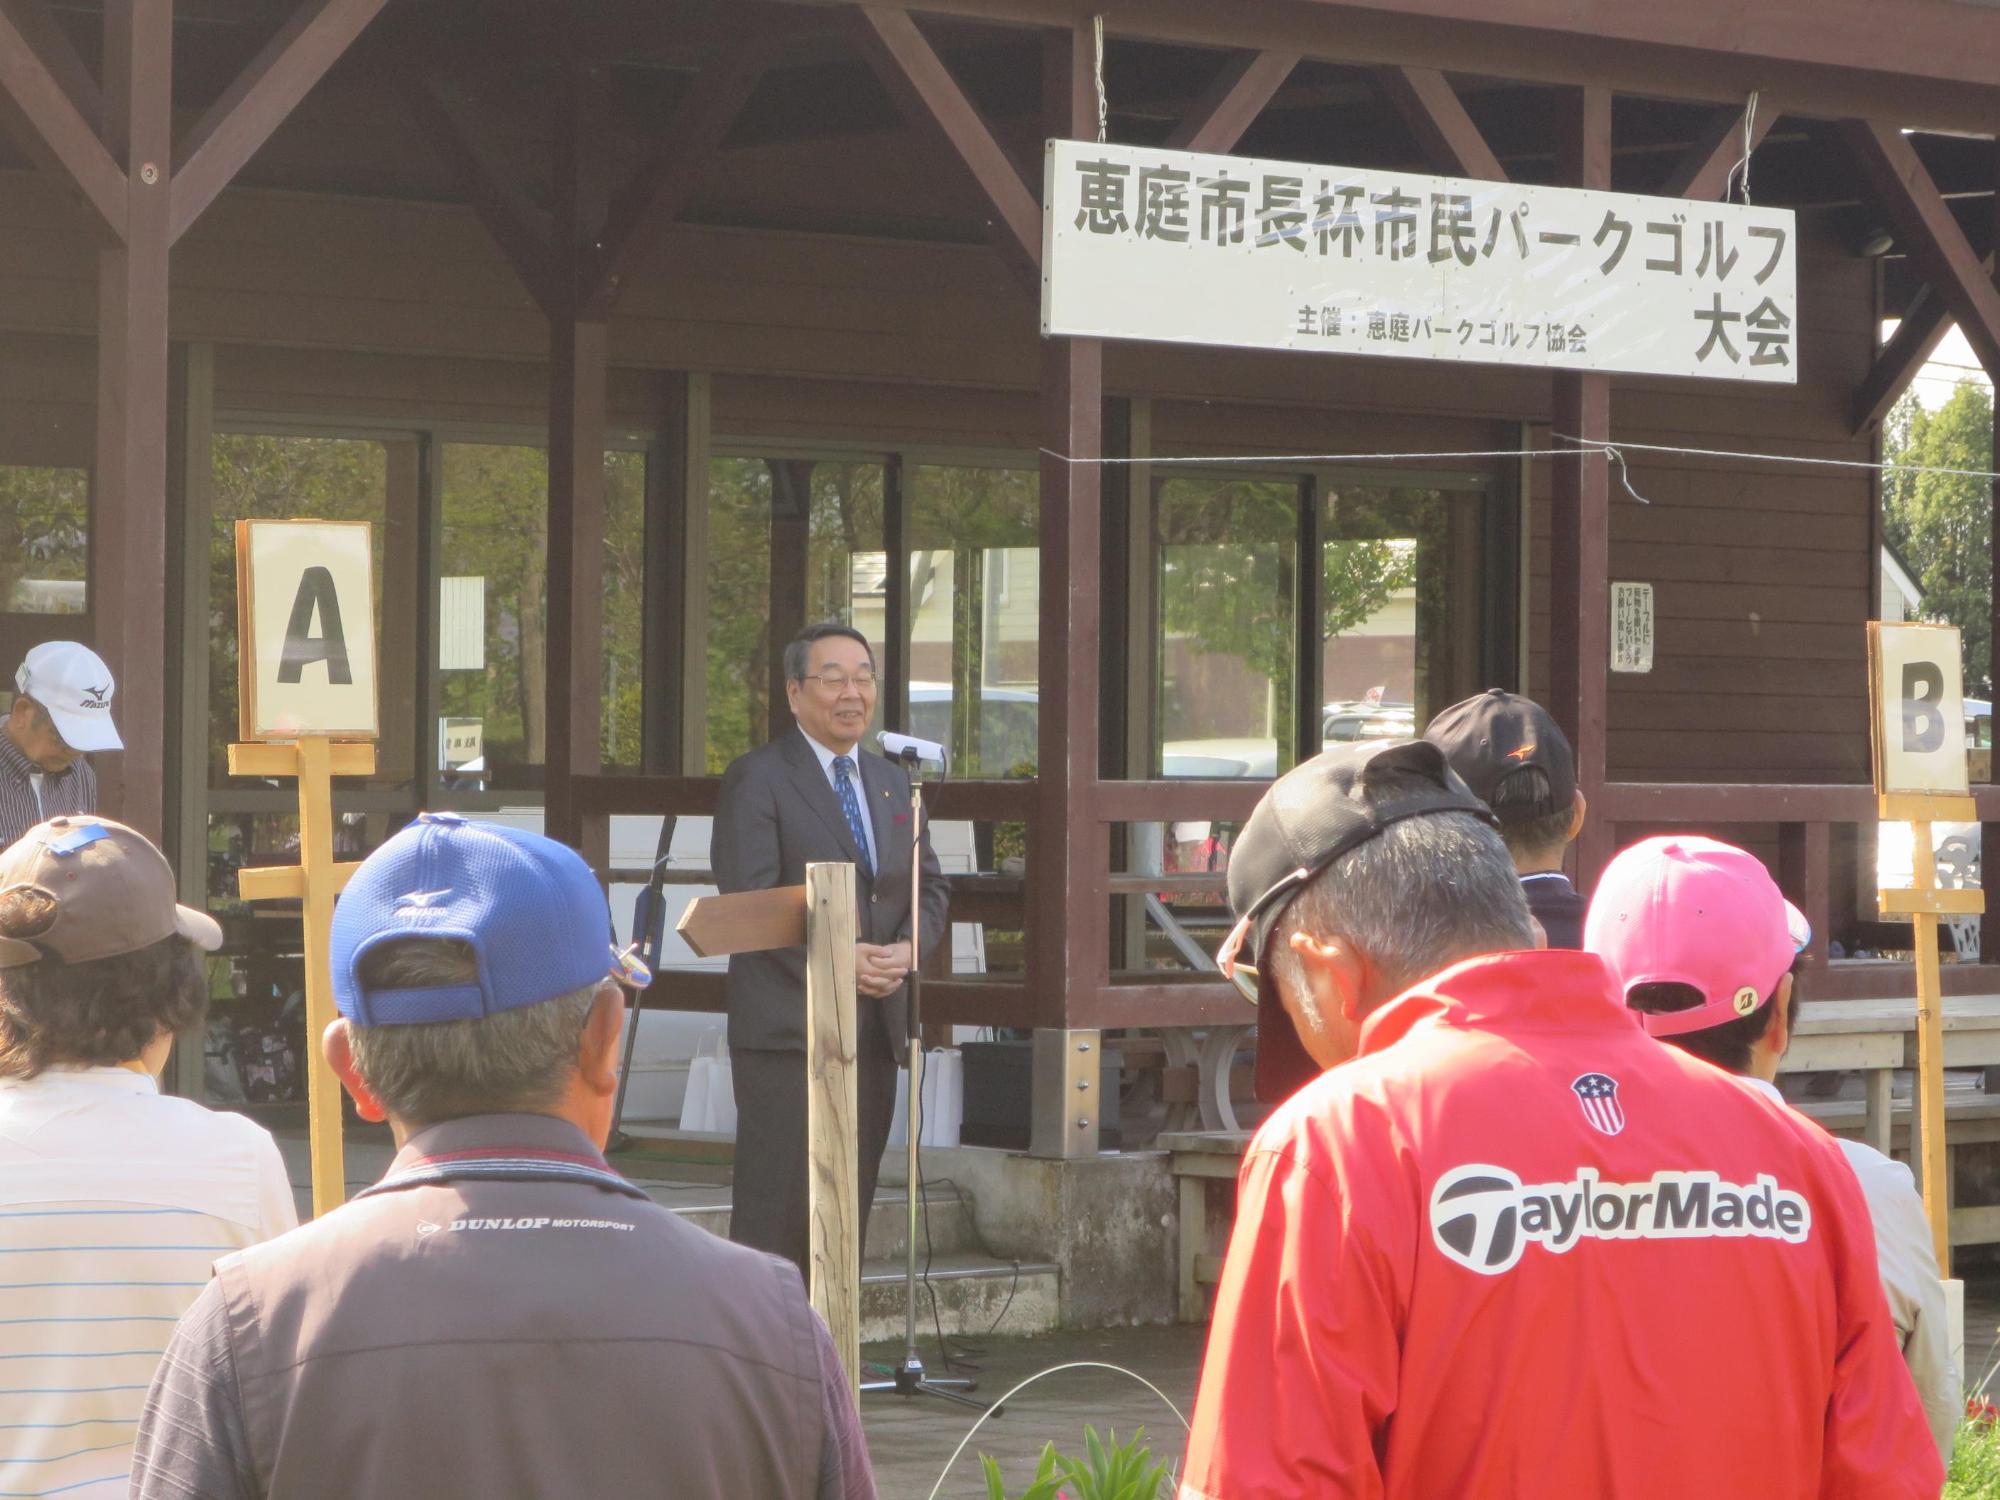 「恵庭市長杯市民PG大会」にて挨拶をしている原田市長の写真